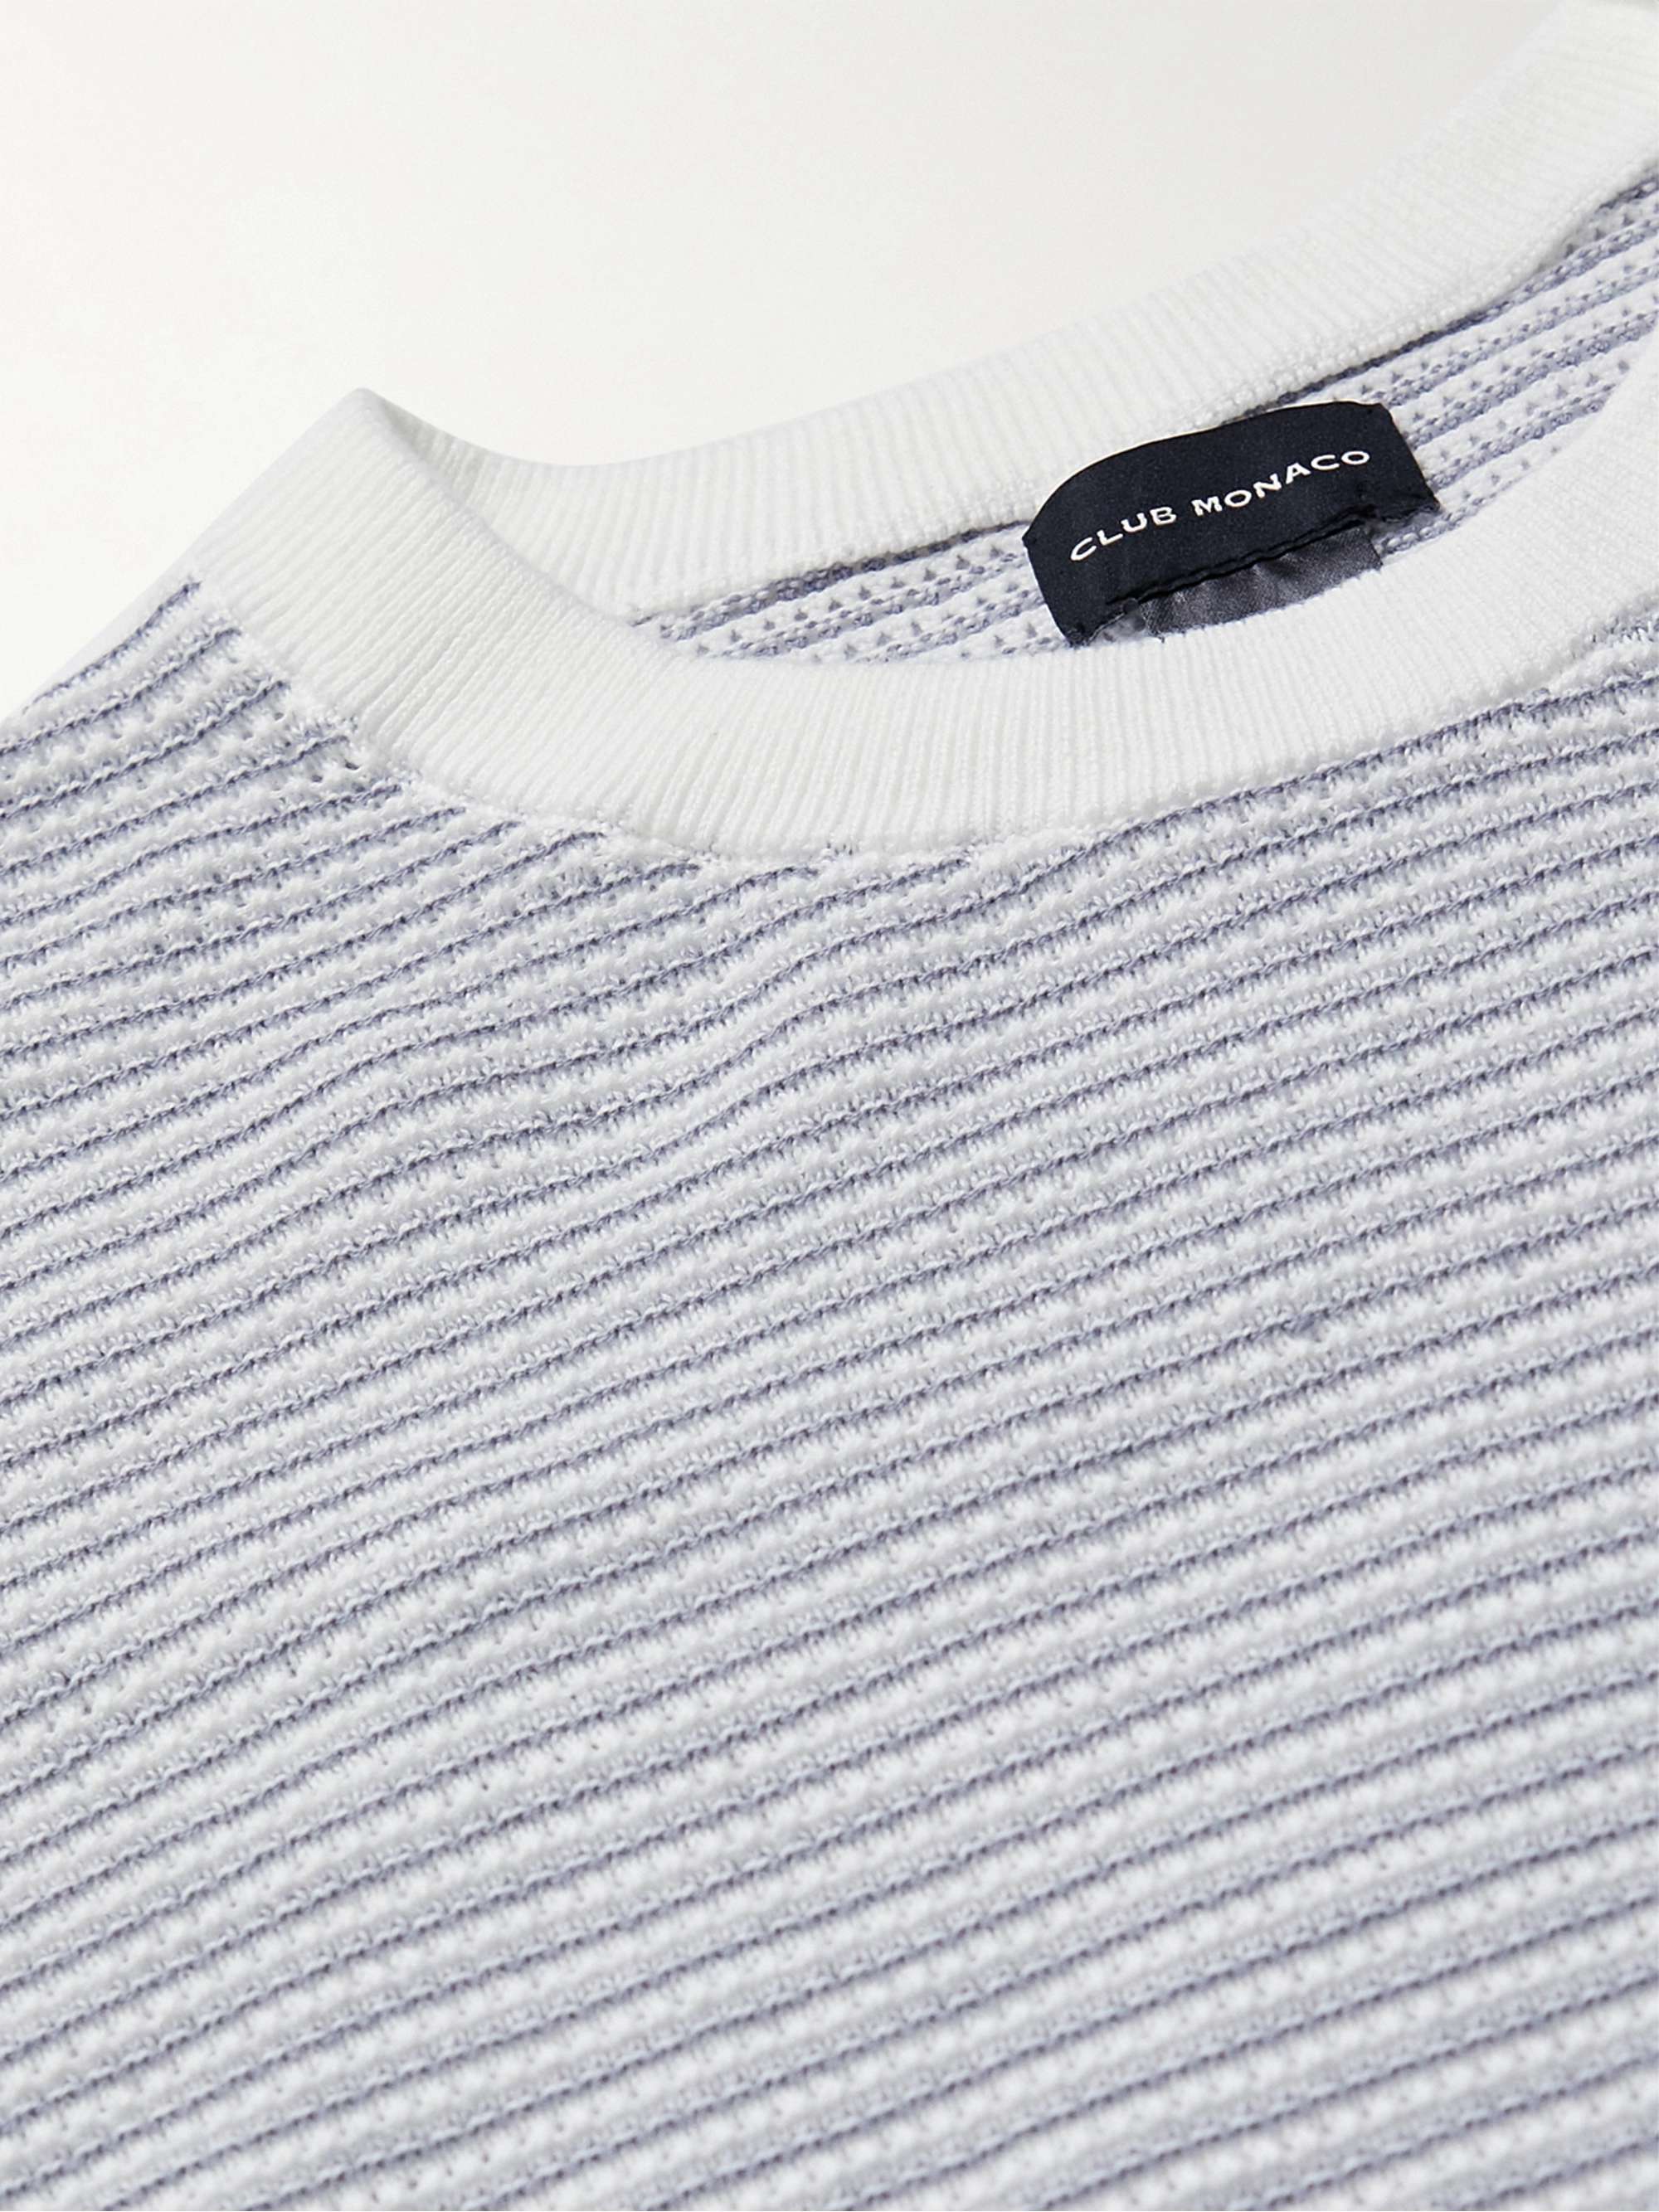 CLUB MONACO Striped Cotton Sweater